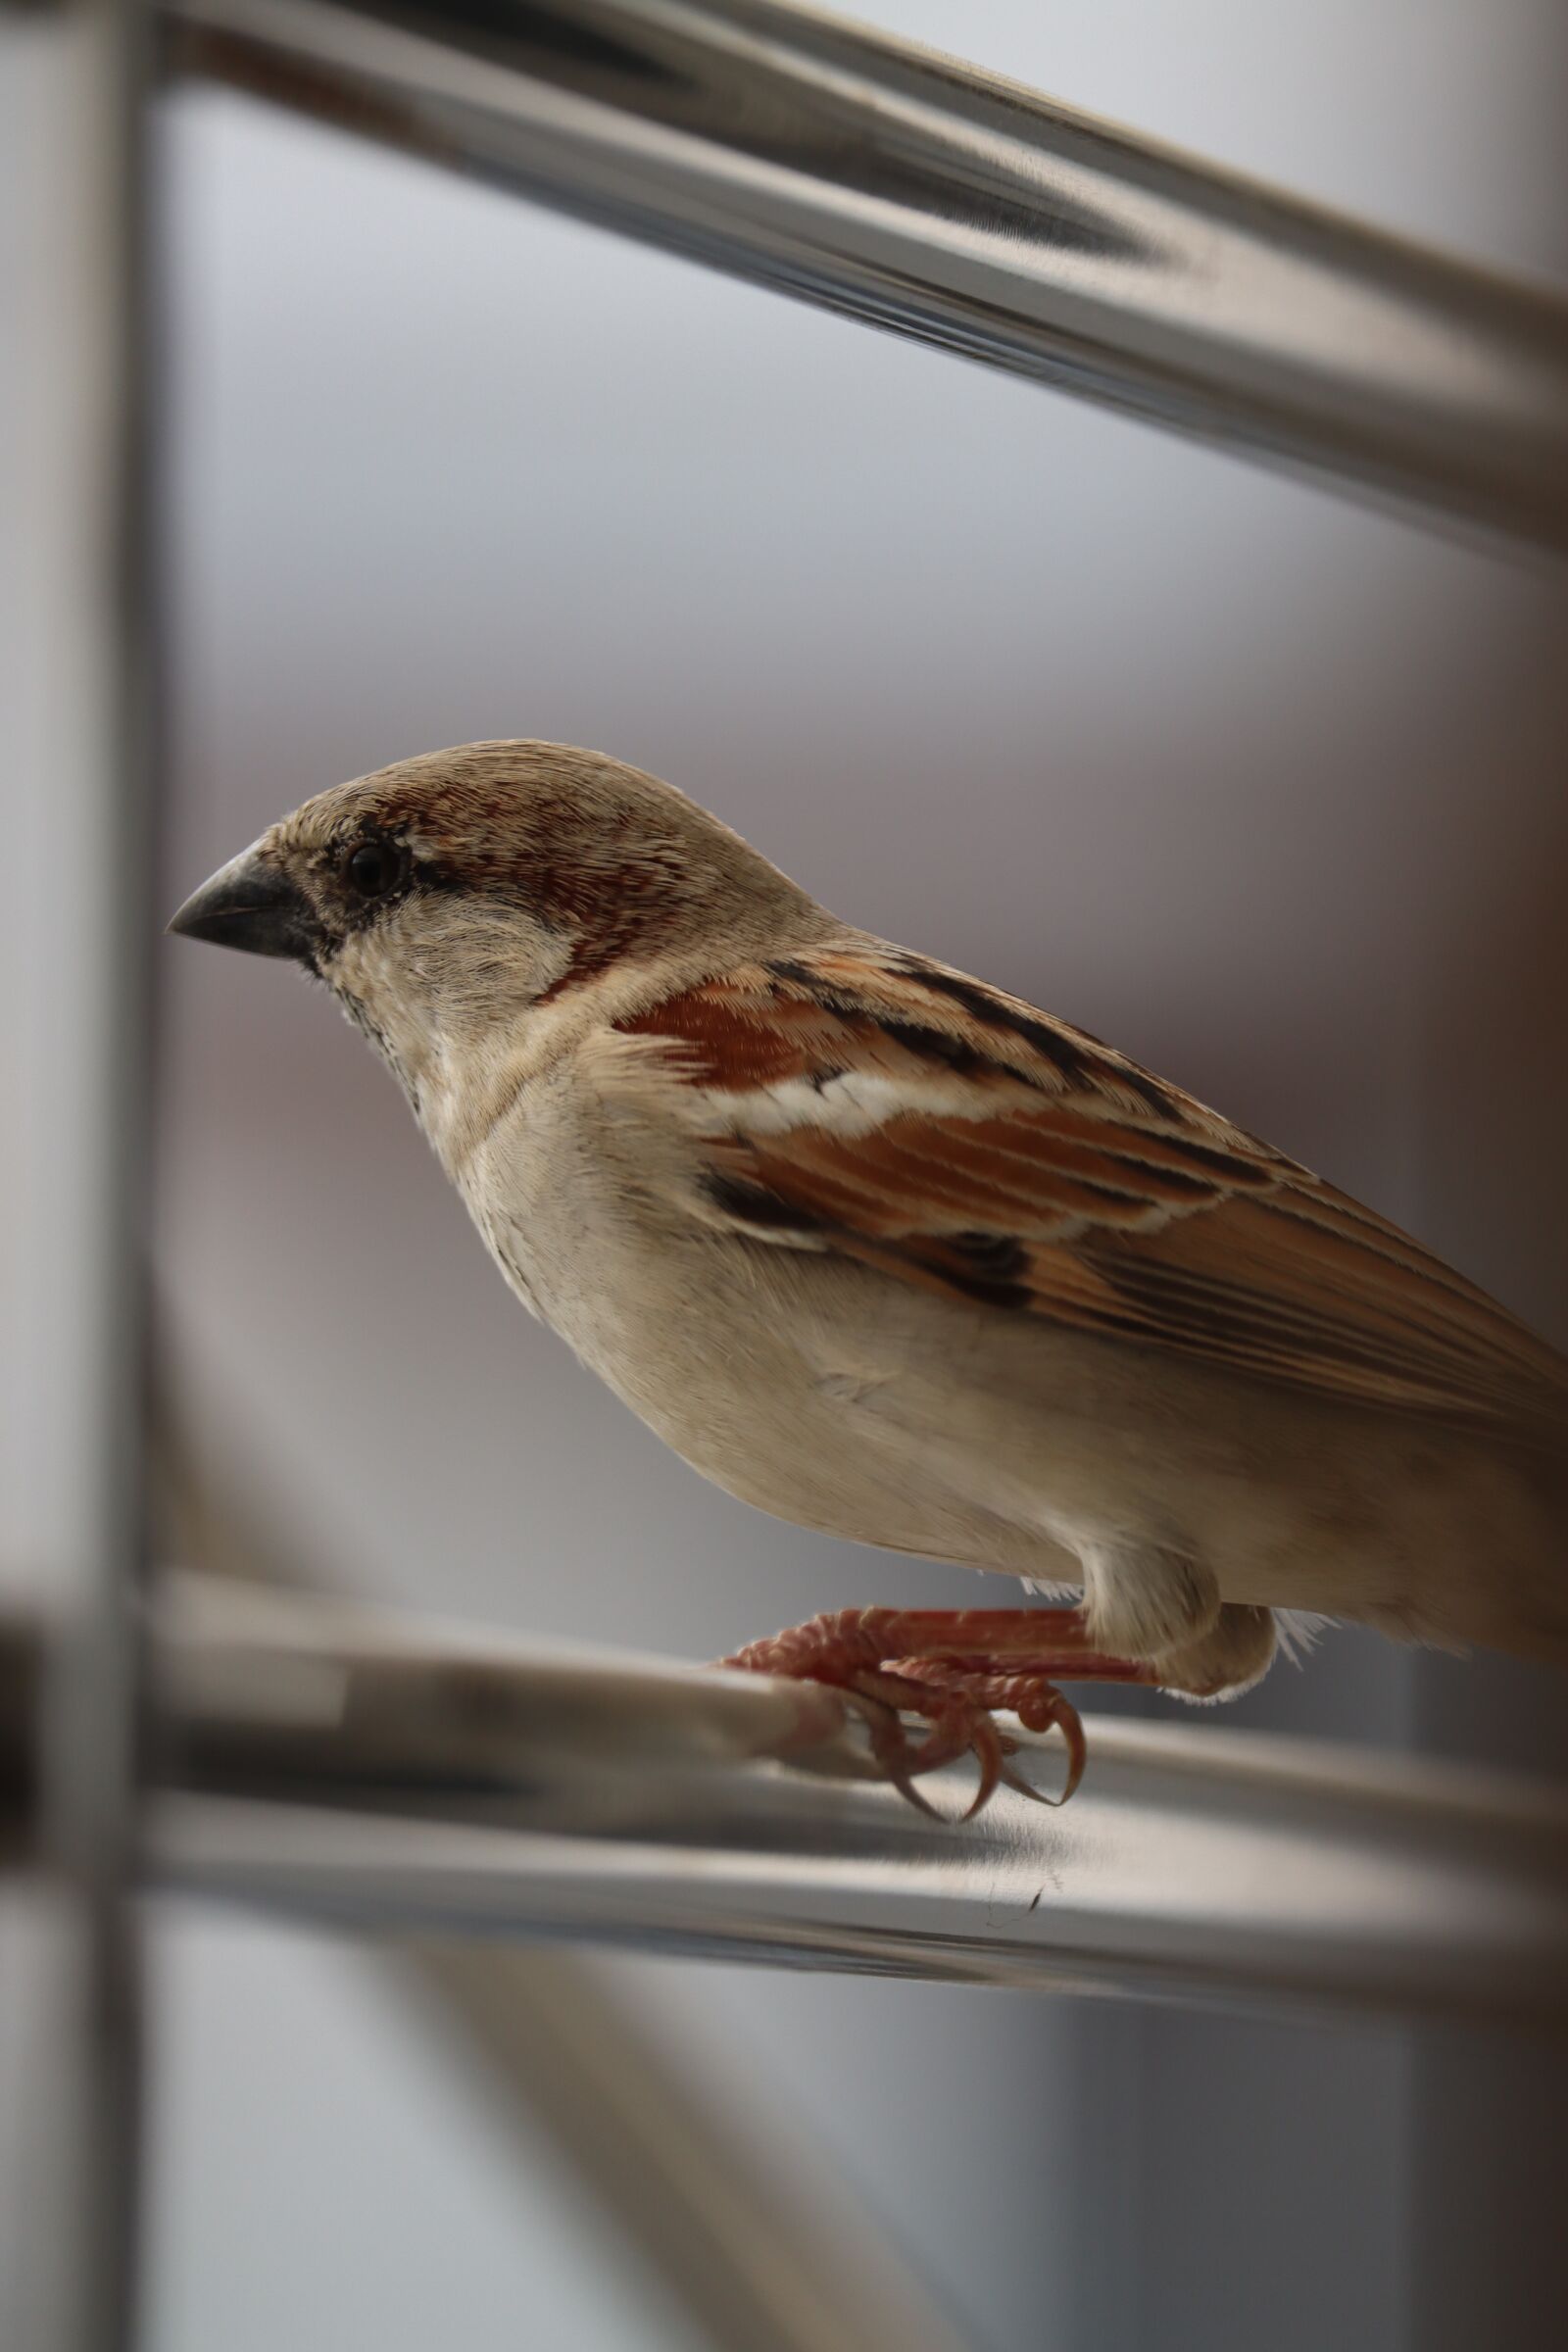 Canon EOS 90D sample photo. Sparrow, bird, nature photography